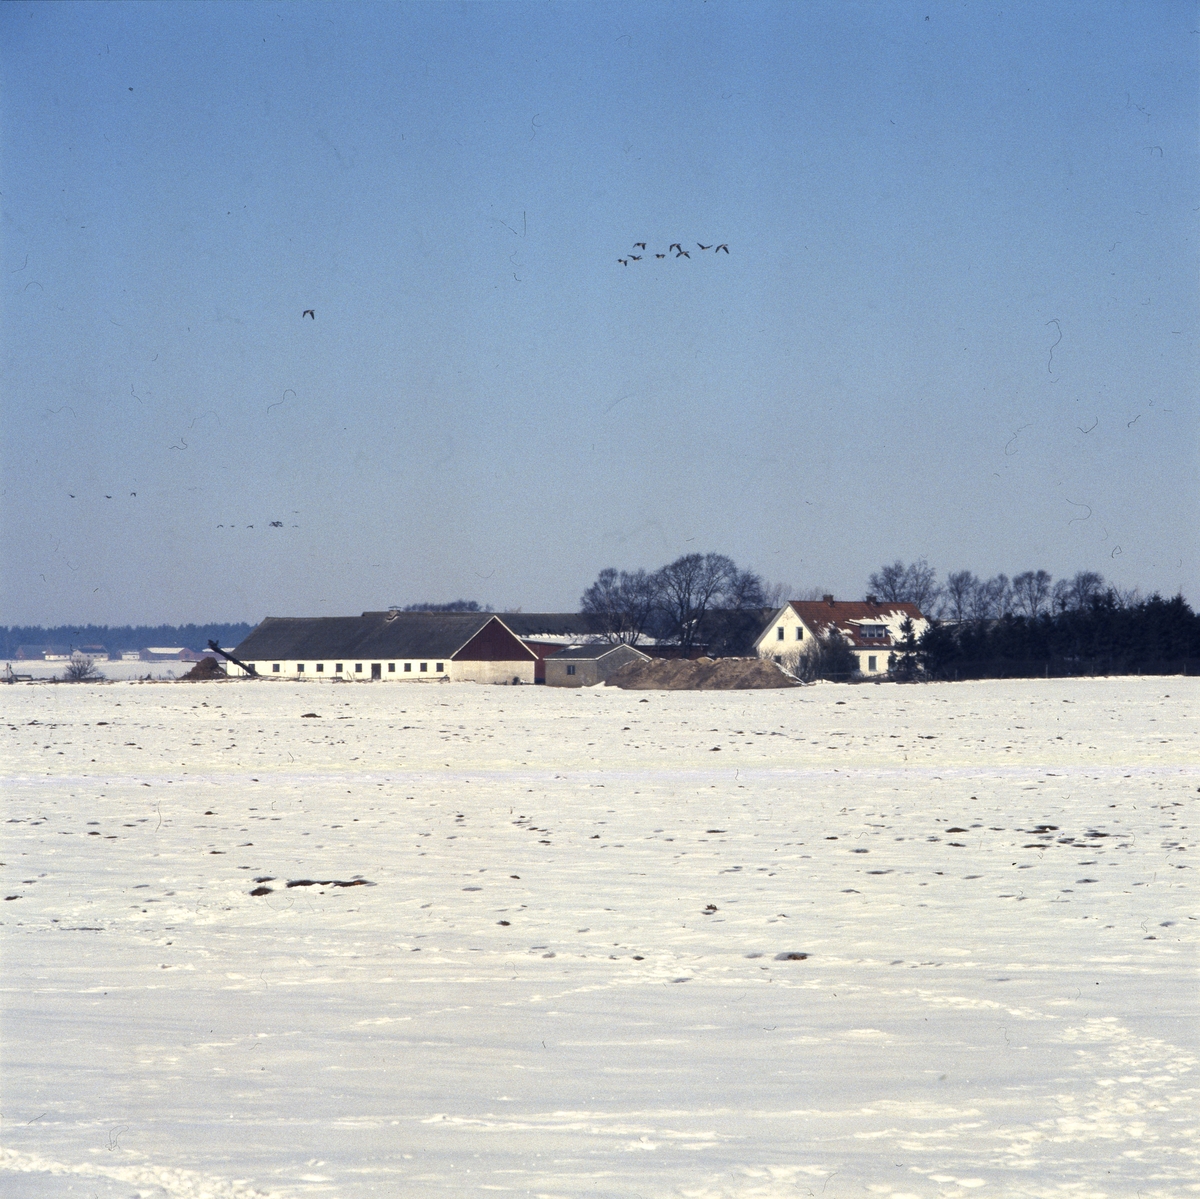 Flygande gäss mot blå himmel över en skånegård, Skåne 1 mars 1986.